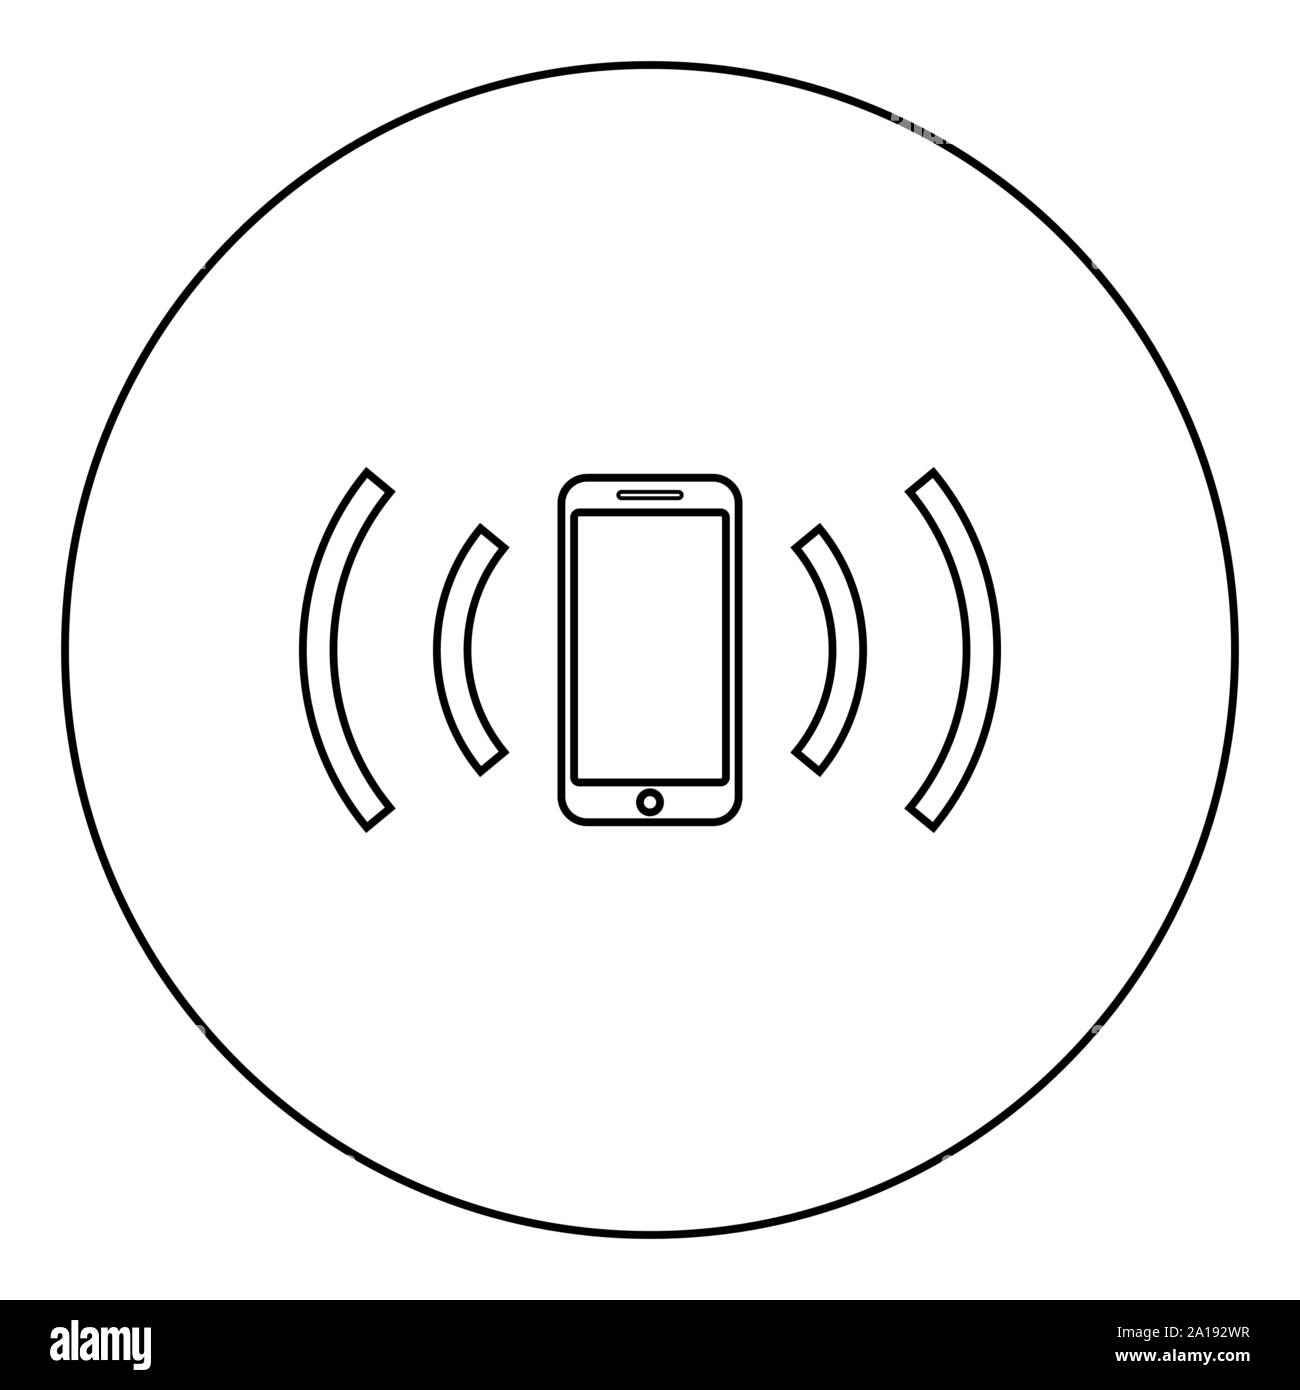 Smartphone sendet Funkwellen Schallwelle emittierenden Wellen Konzept Symbol im Kreis runde Kontur schwarz Vector Illustration Flat Style simple Image Stock Vektor